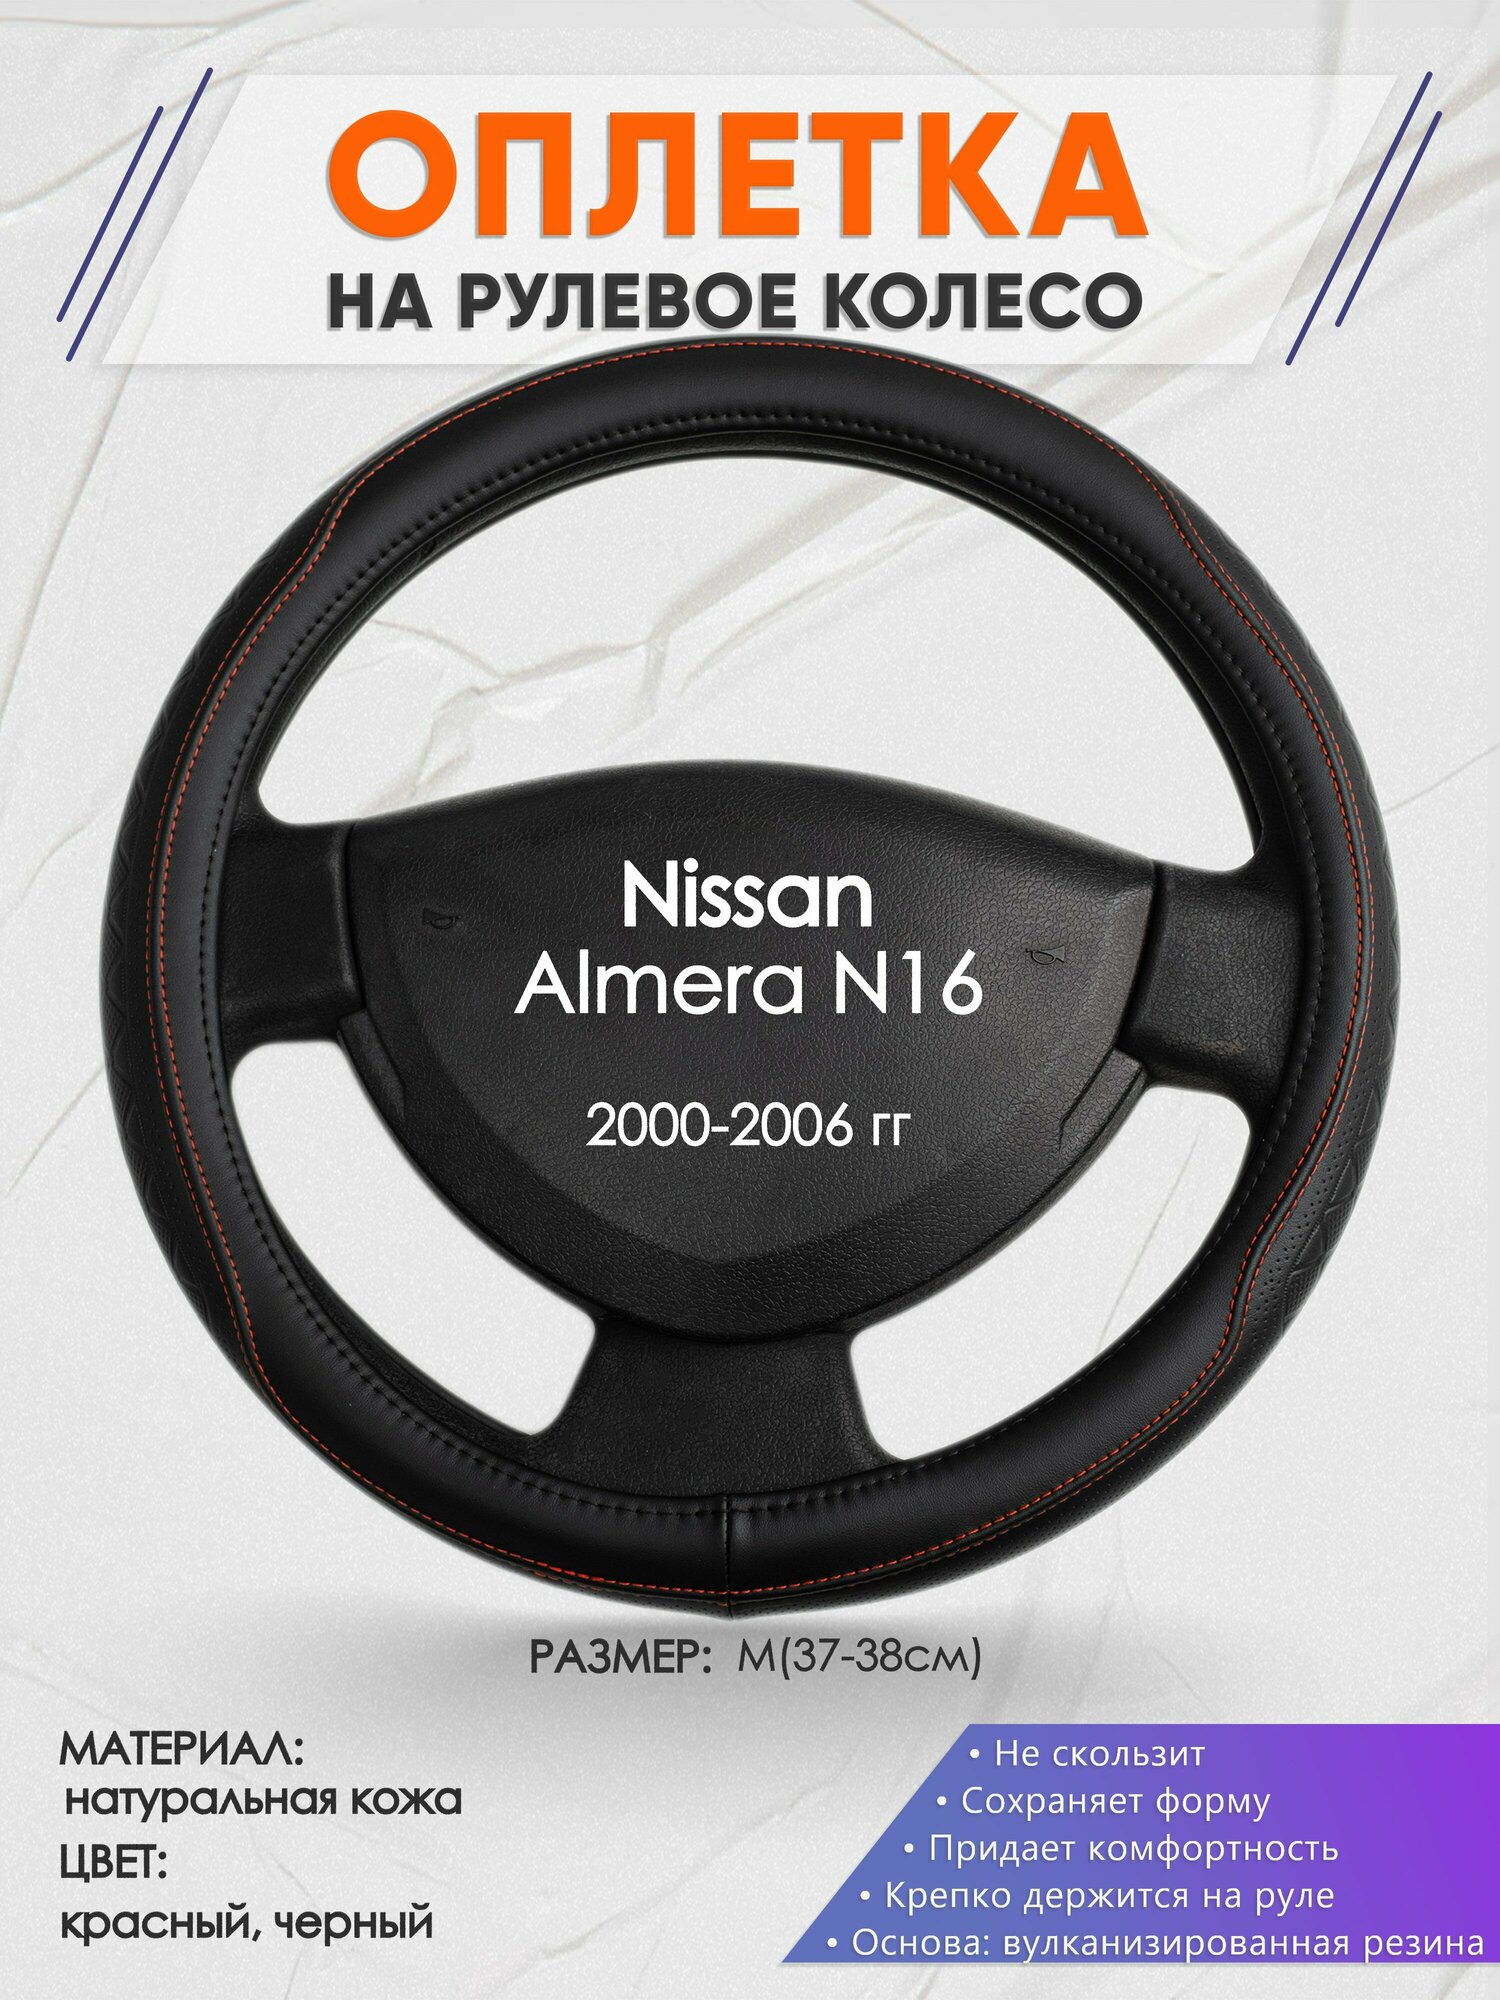 Оплетка на руль для Nissan Almera N16(Ниссан Альмера) 2000-2006, M(37-38см), Натуральная кожа 90